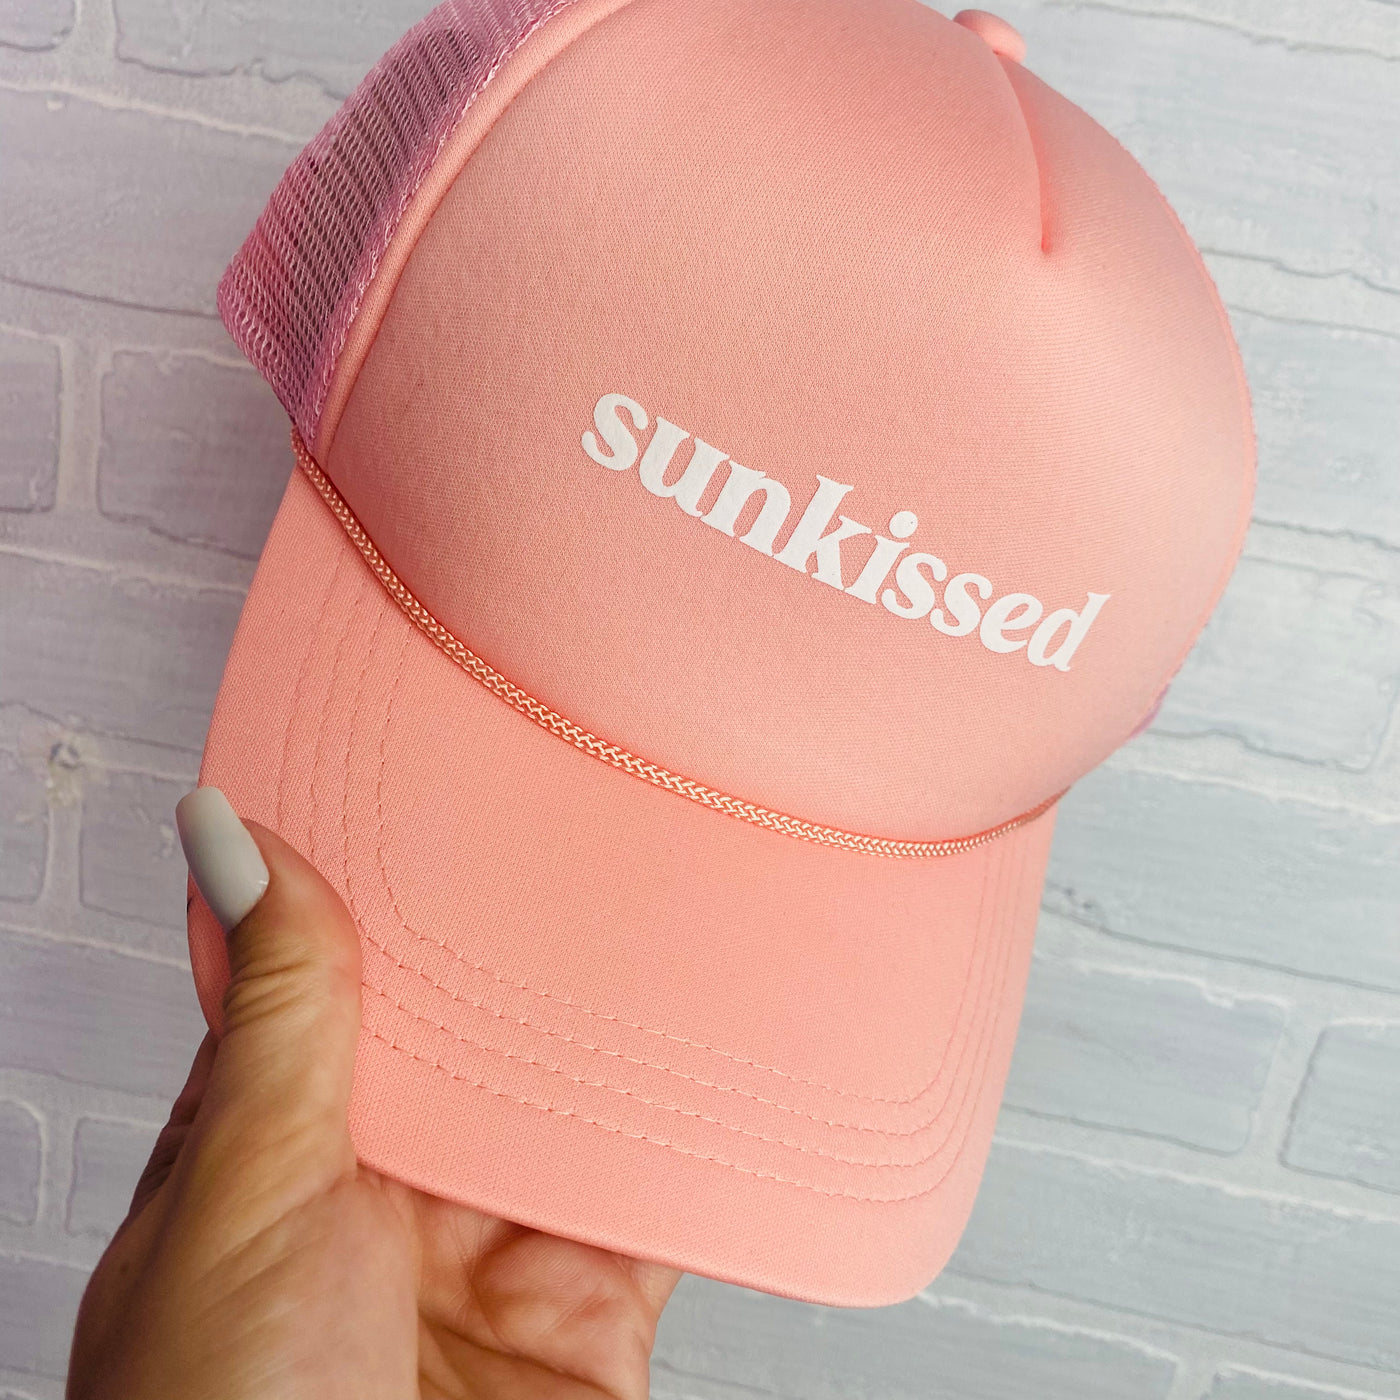 Sunkissed Blush Pink Trucker Hat